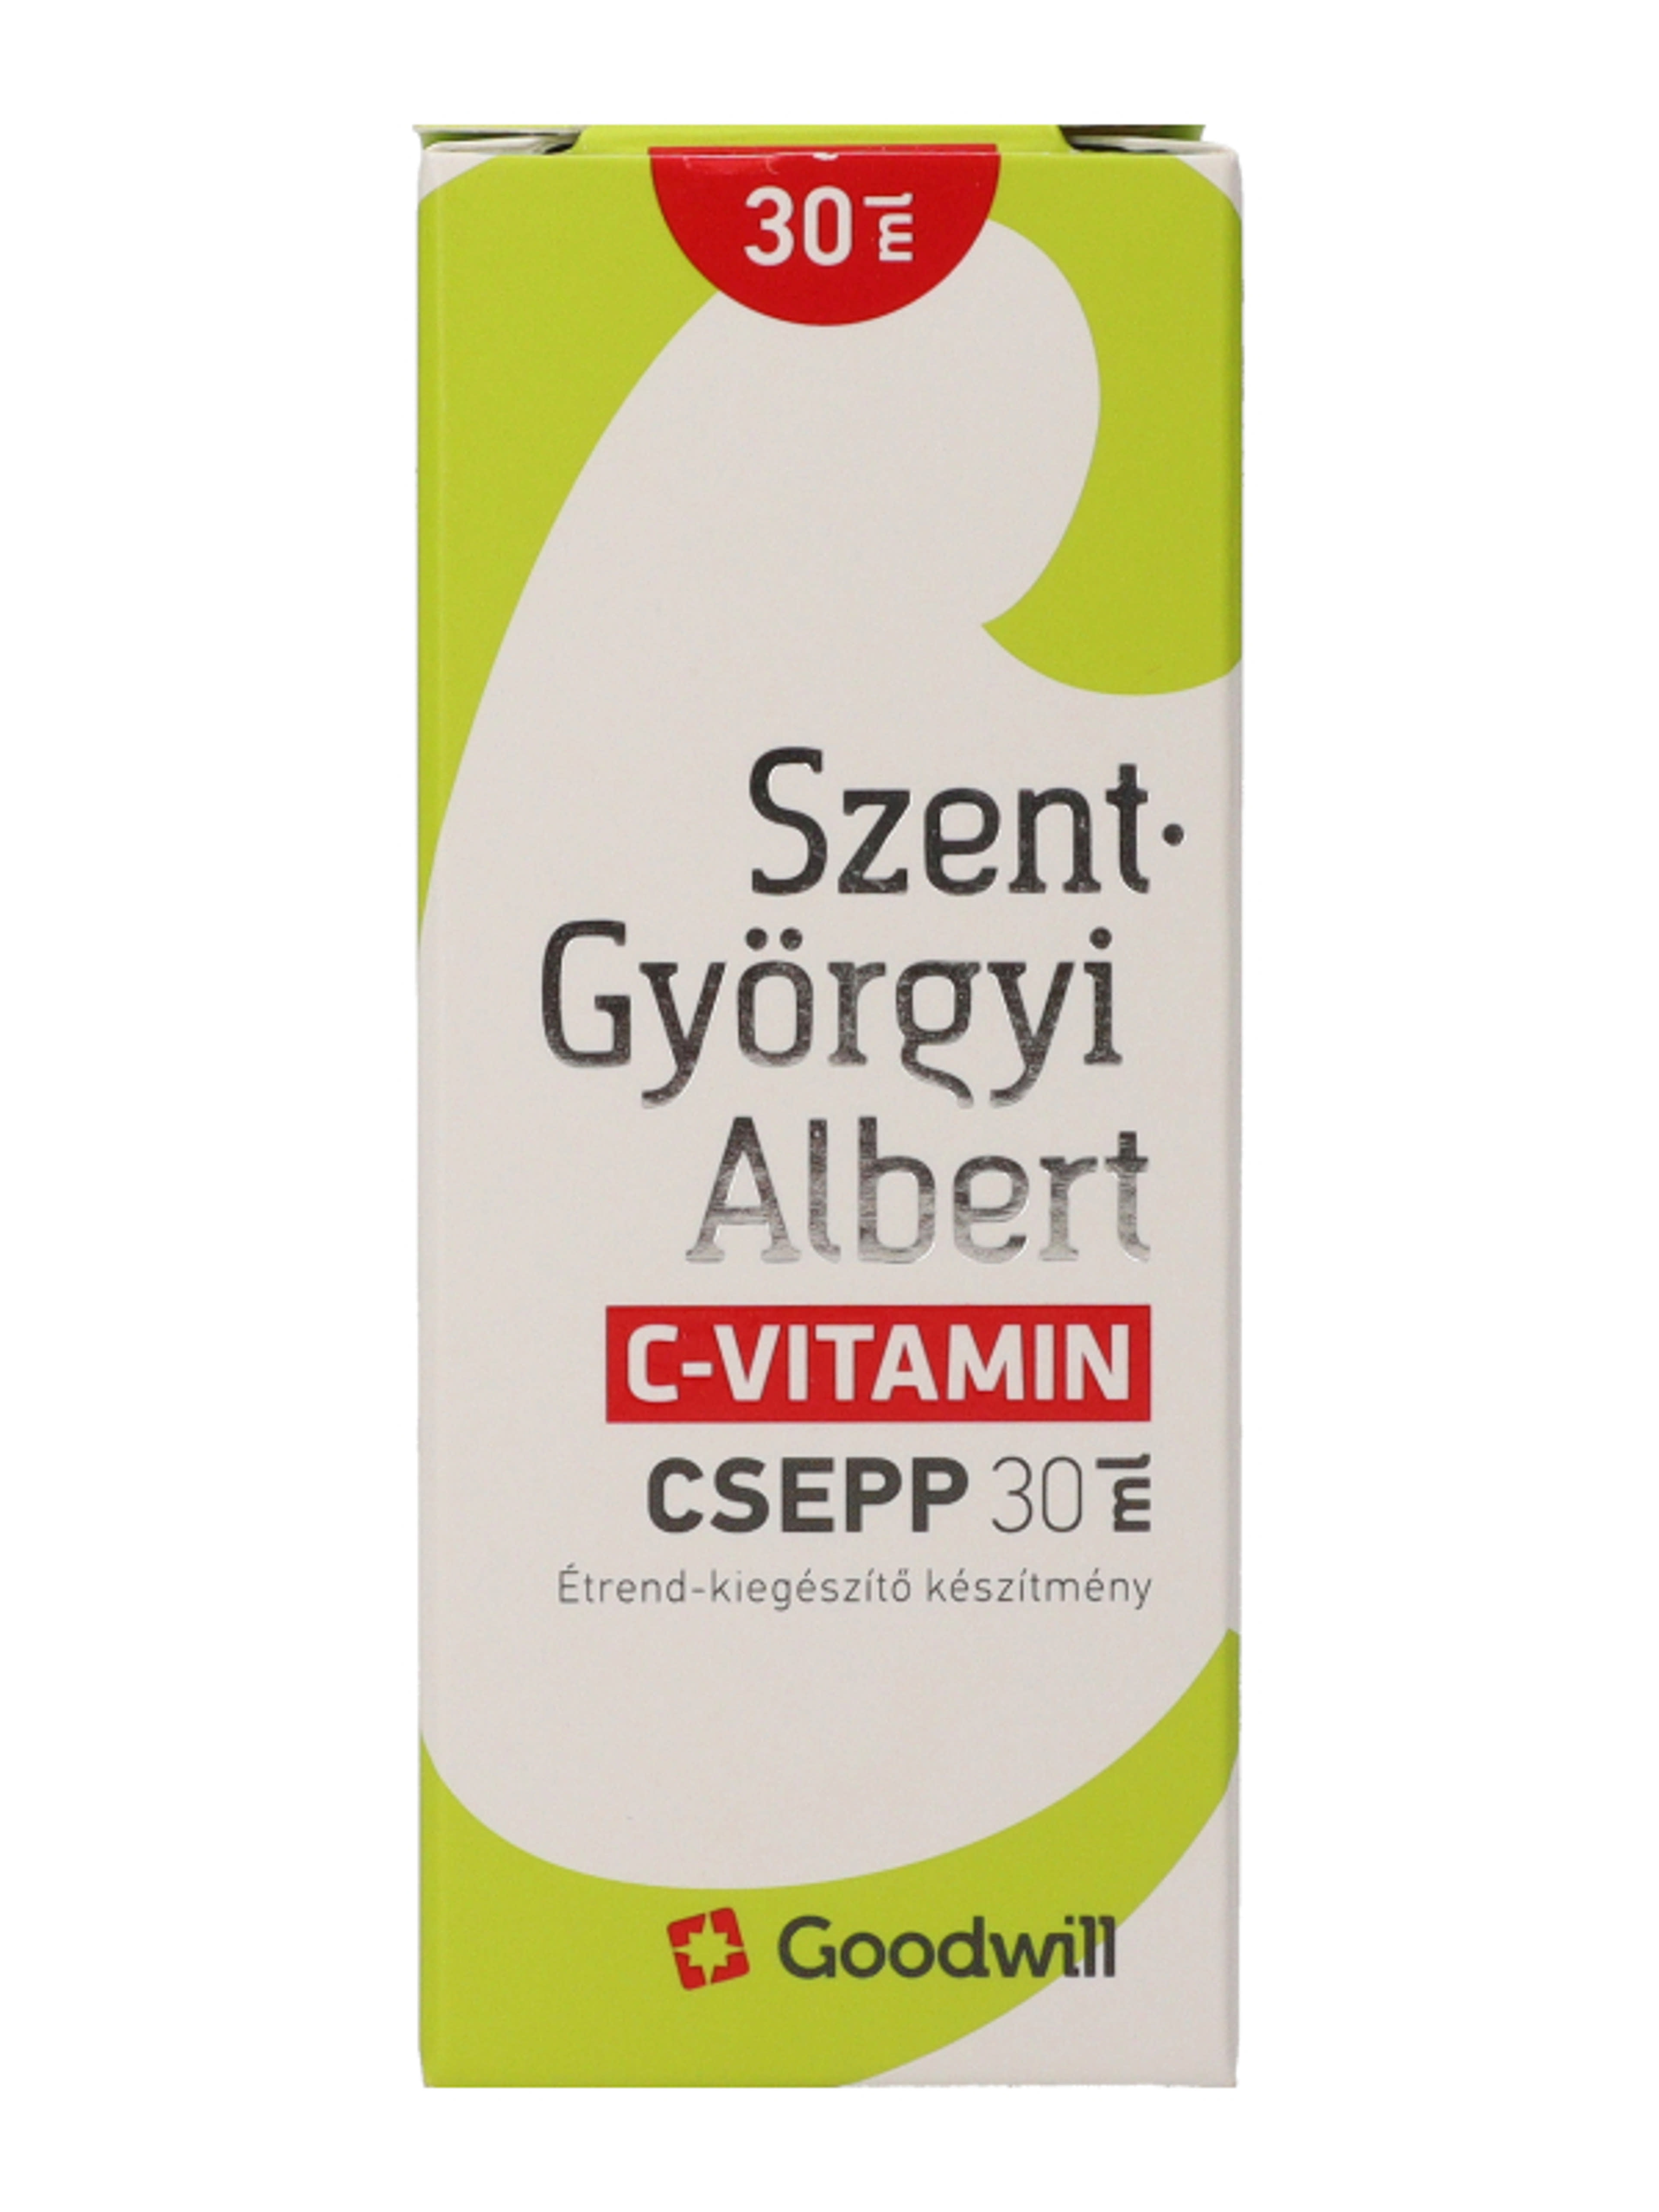 Szent- Györgyi Albert C-Vitamin csepp - 30 ml